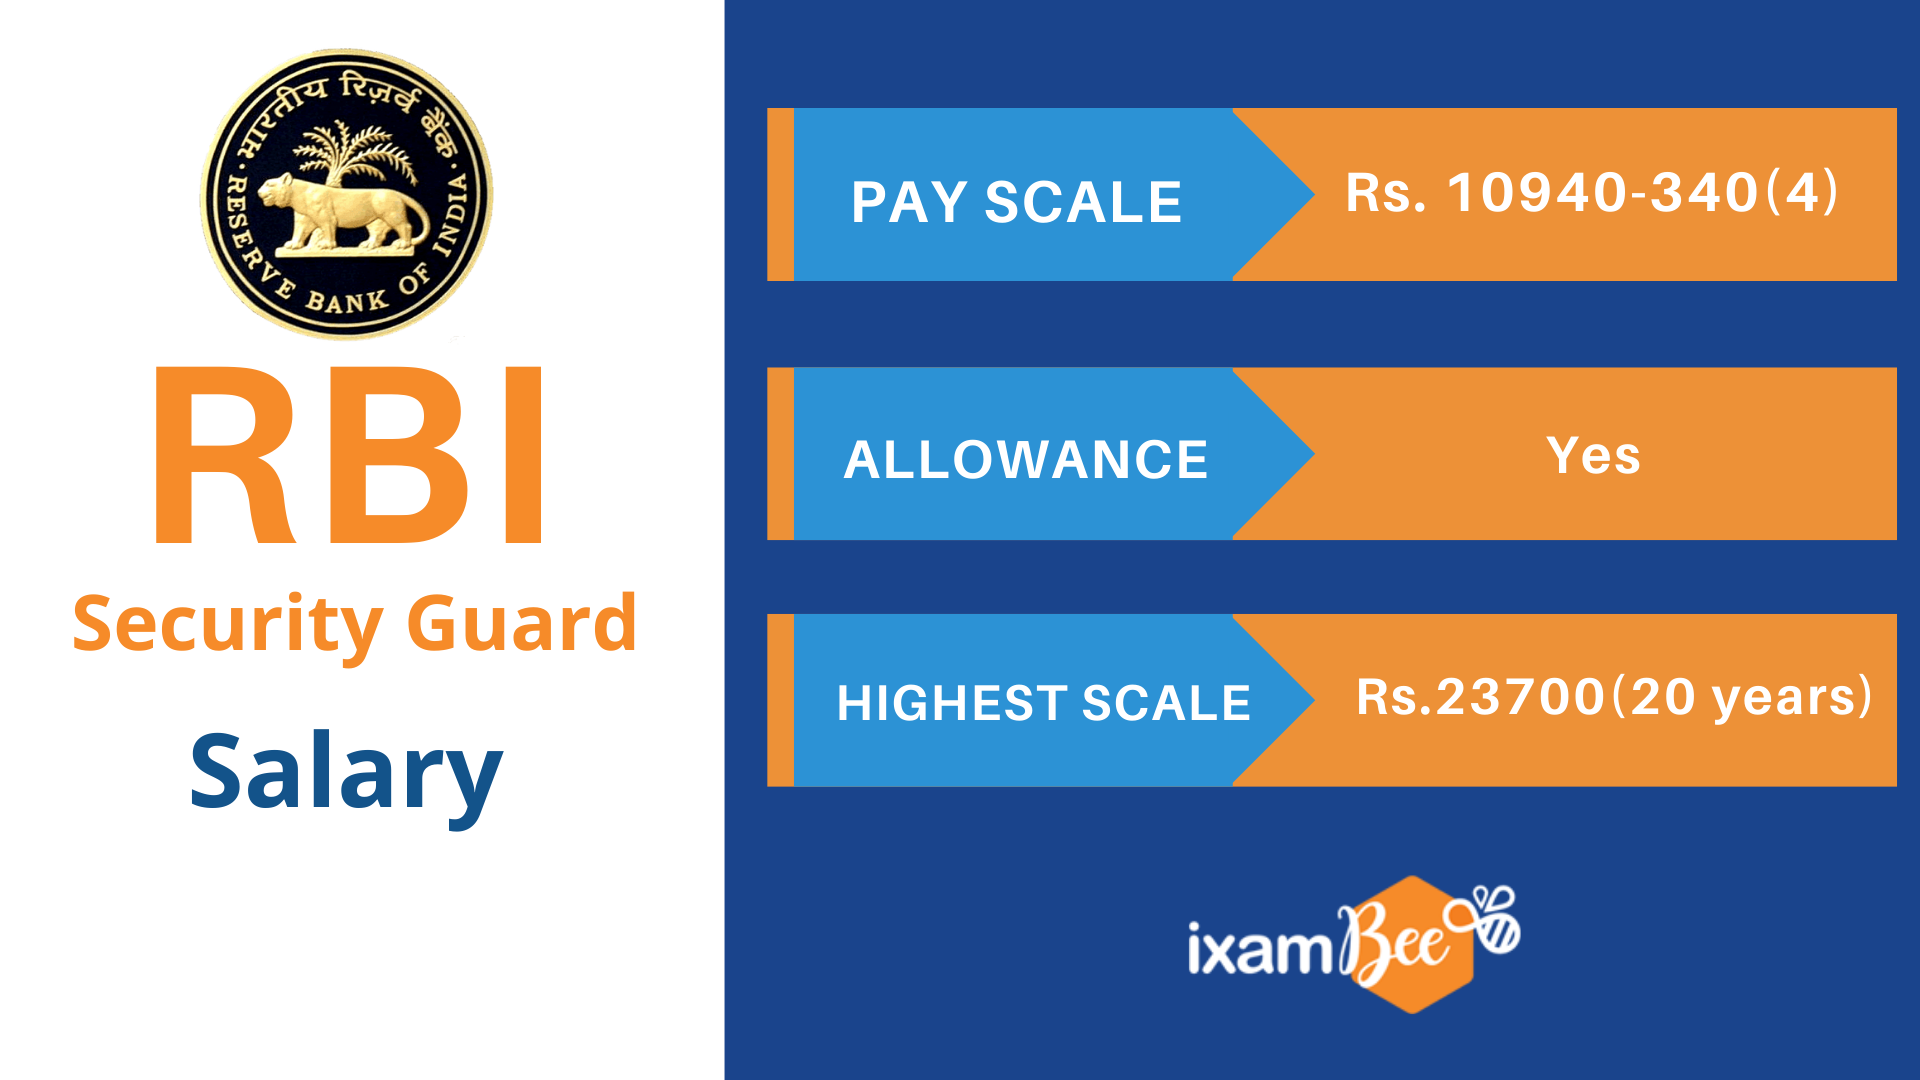 RBI Security Guard Salary